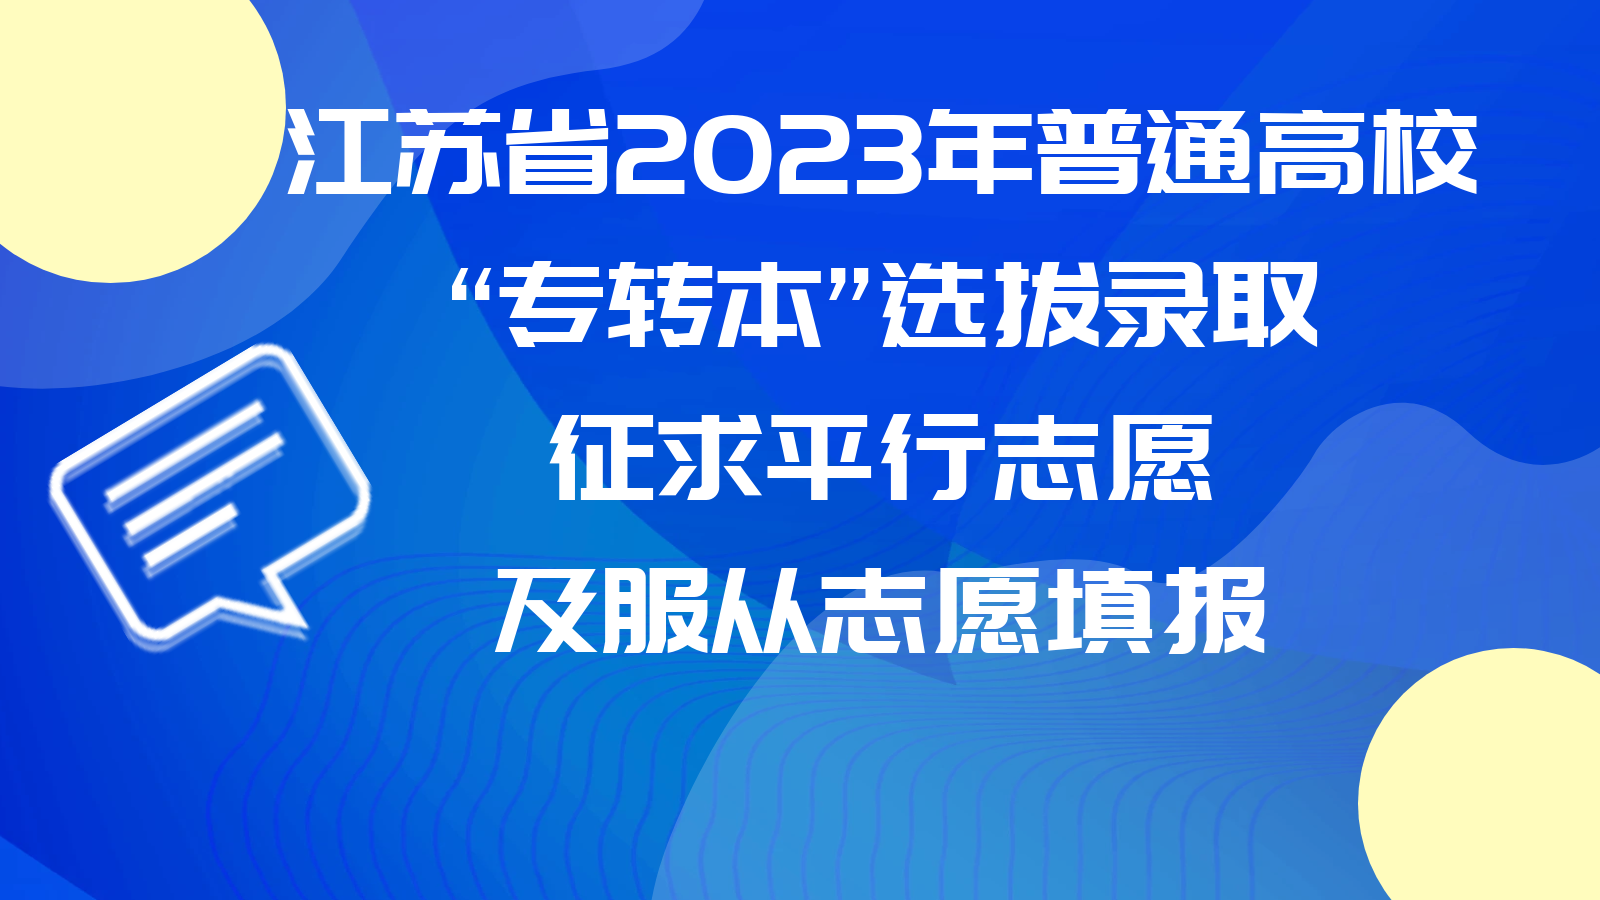 江苏省2023年普通高校“专转本”选拔录取征求平行志愿及服从志愿填报